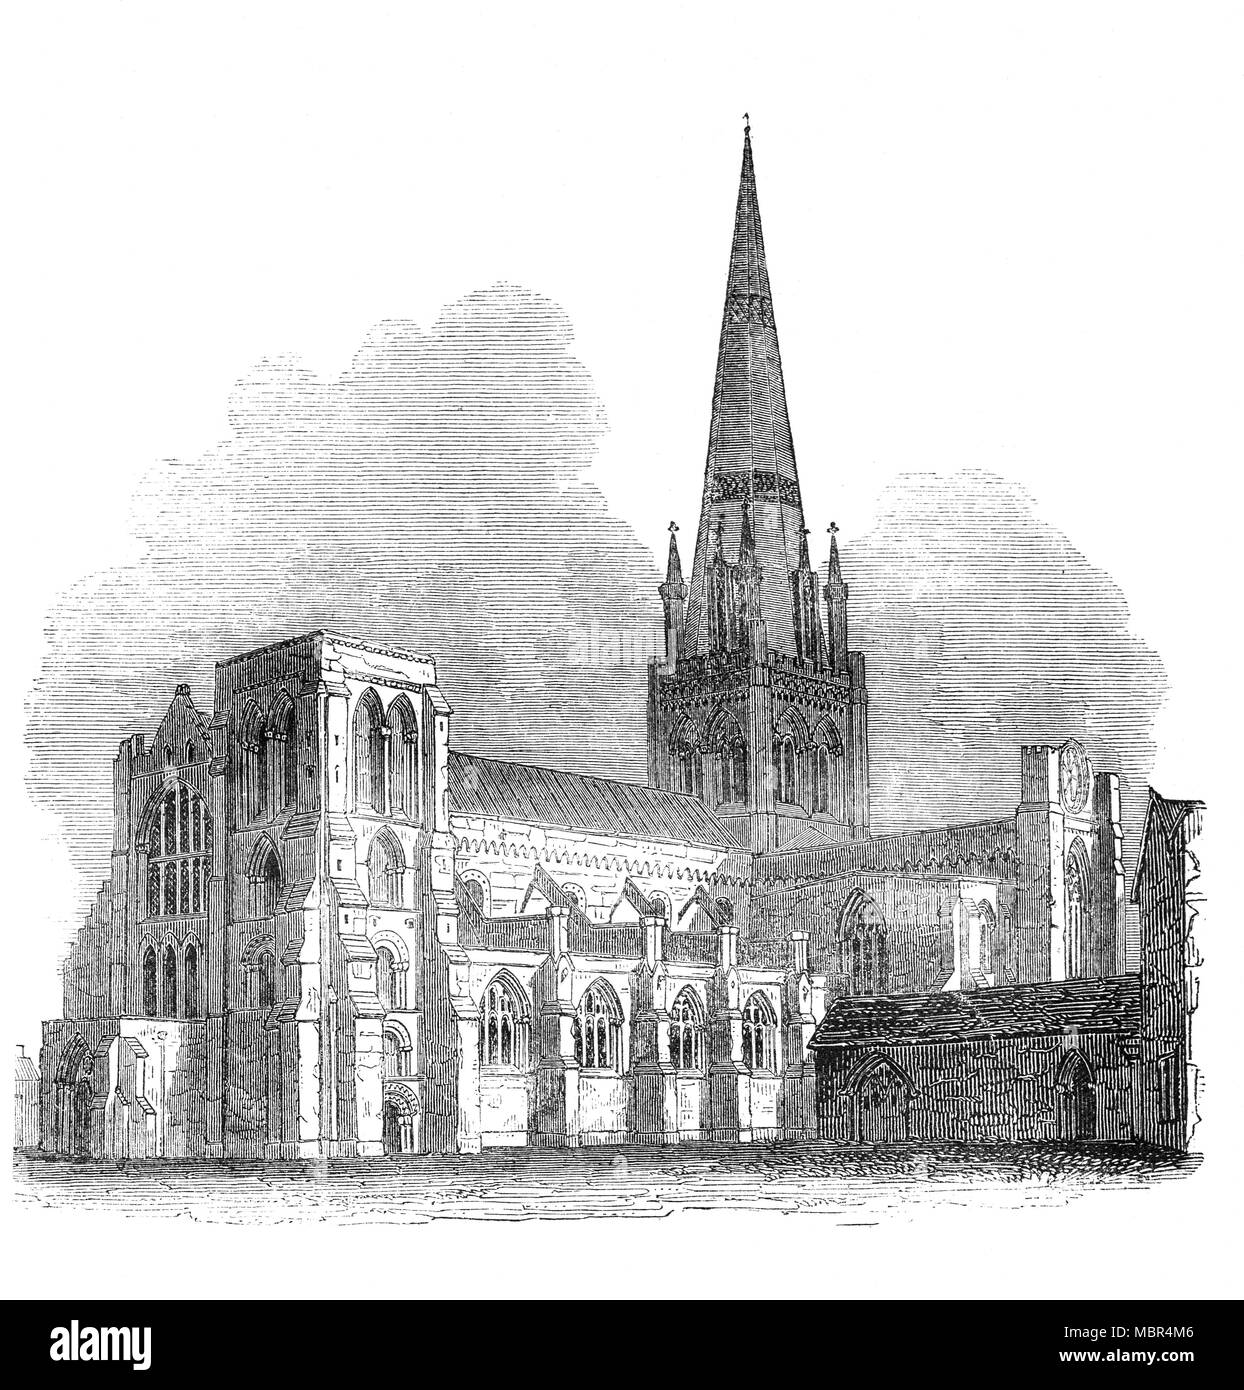 Chichester Cathedral, formal bekannt als die Kathedrale der Heiligen Dreifaltigkeit, ist in Chichester, Sussex, Großbritannien. Es war wie eine Kathedrale im Jahr 1075 gegründet und 1108 mit feinen Architektur sowohl in der Normannen und der Gotischen Stil geweiht. Es ist die typisch englische Dom' genannt, die von der Architekturhistoriker Nikolaus Pevsner. Stockfoto